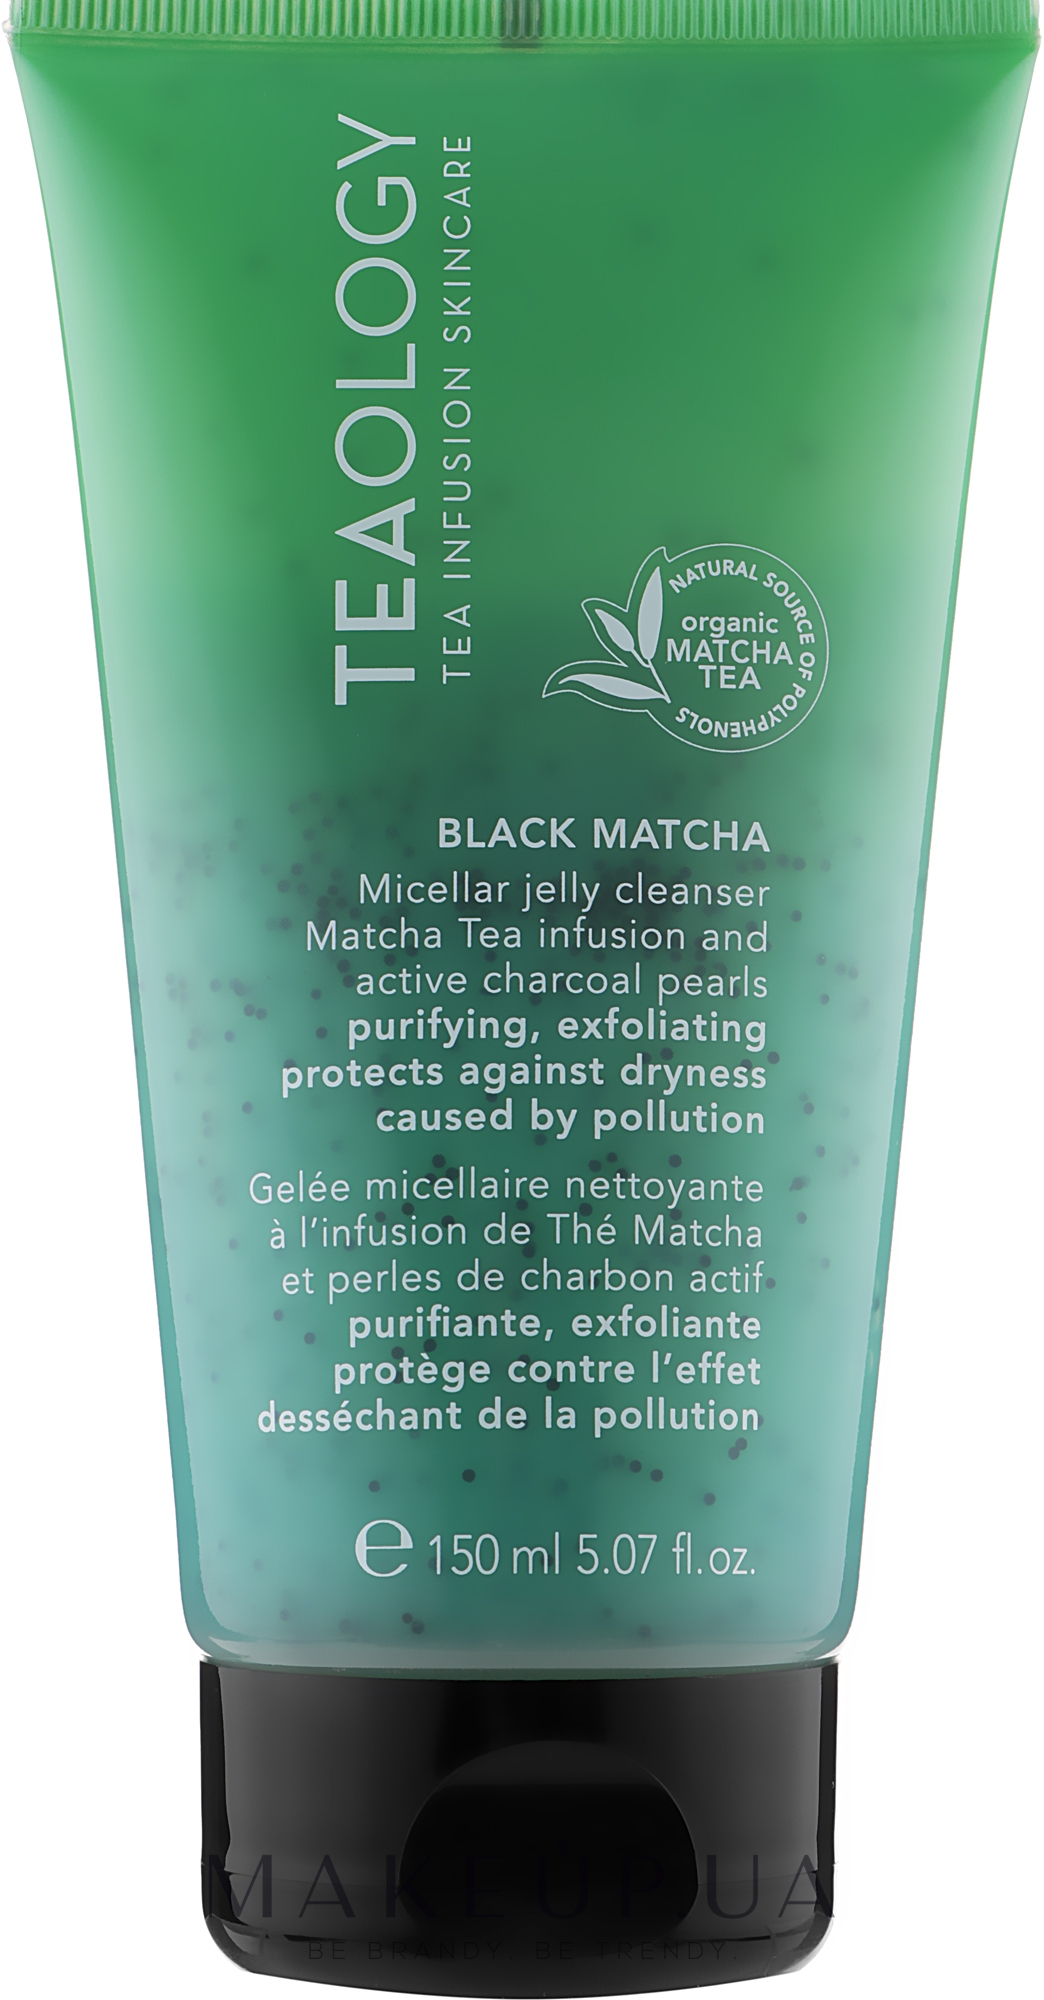 Міцелярний очищувальний гель для обличчя з чорною матчею - Teaology Matcha Tea Black Matcha Micellar Jelly Cleanser — фото 150ml